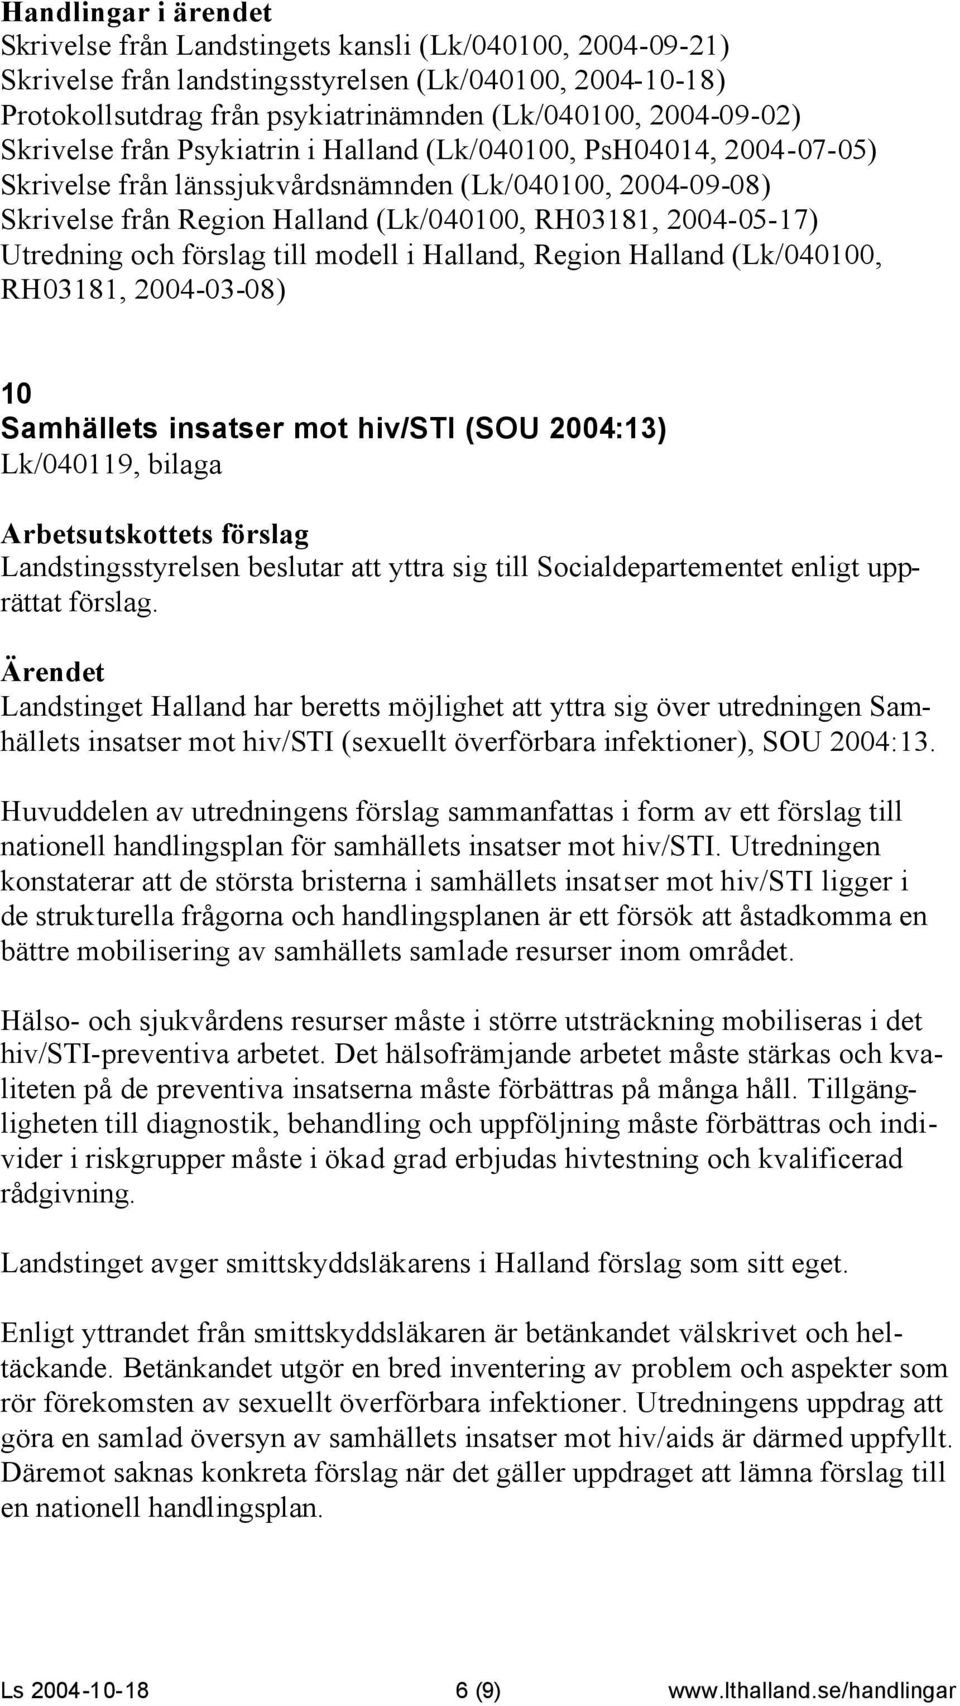 till modell i Halland, Region Halland (Lk/040100, RH03181, 2004-03-08) 10 Samhällets insatser mot hiv/sti (SOU 2004:13) Lk/040119, bilaga Landstingsstyrelsen beslutar att yttra sig till